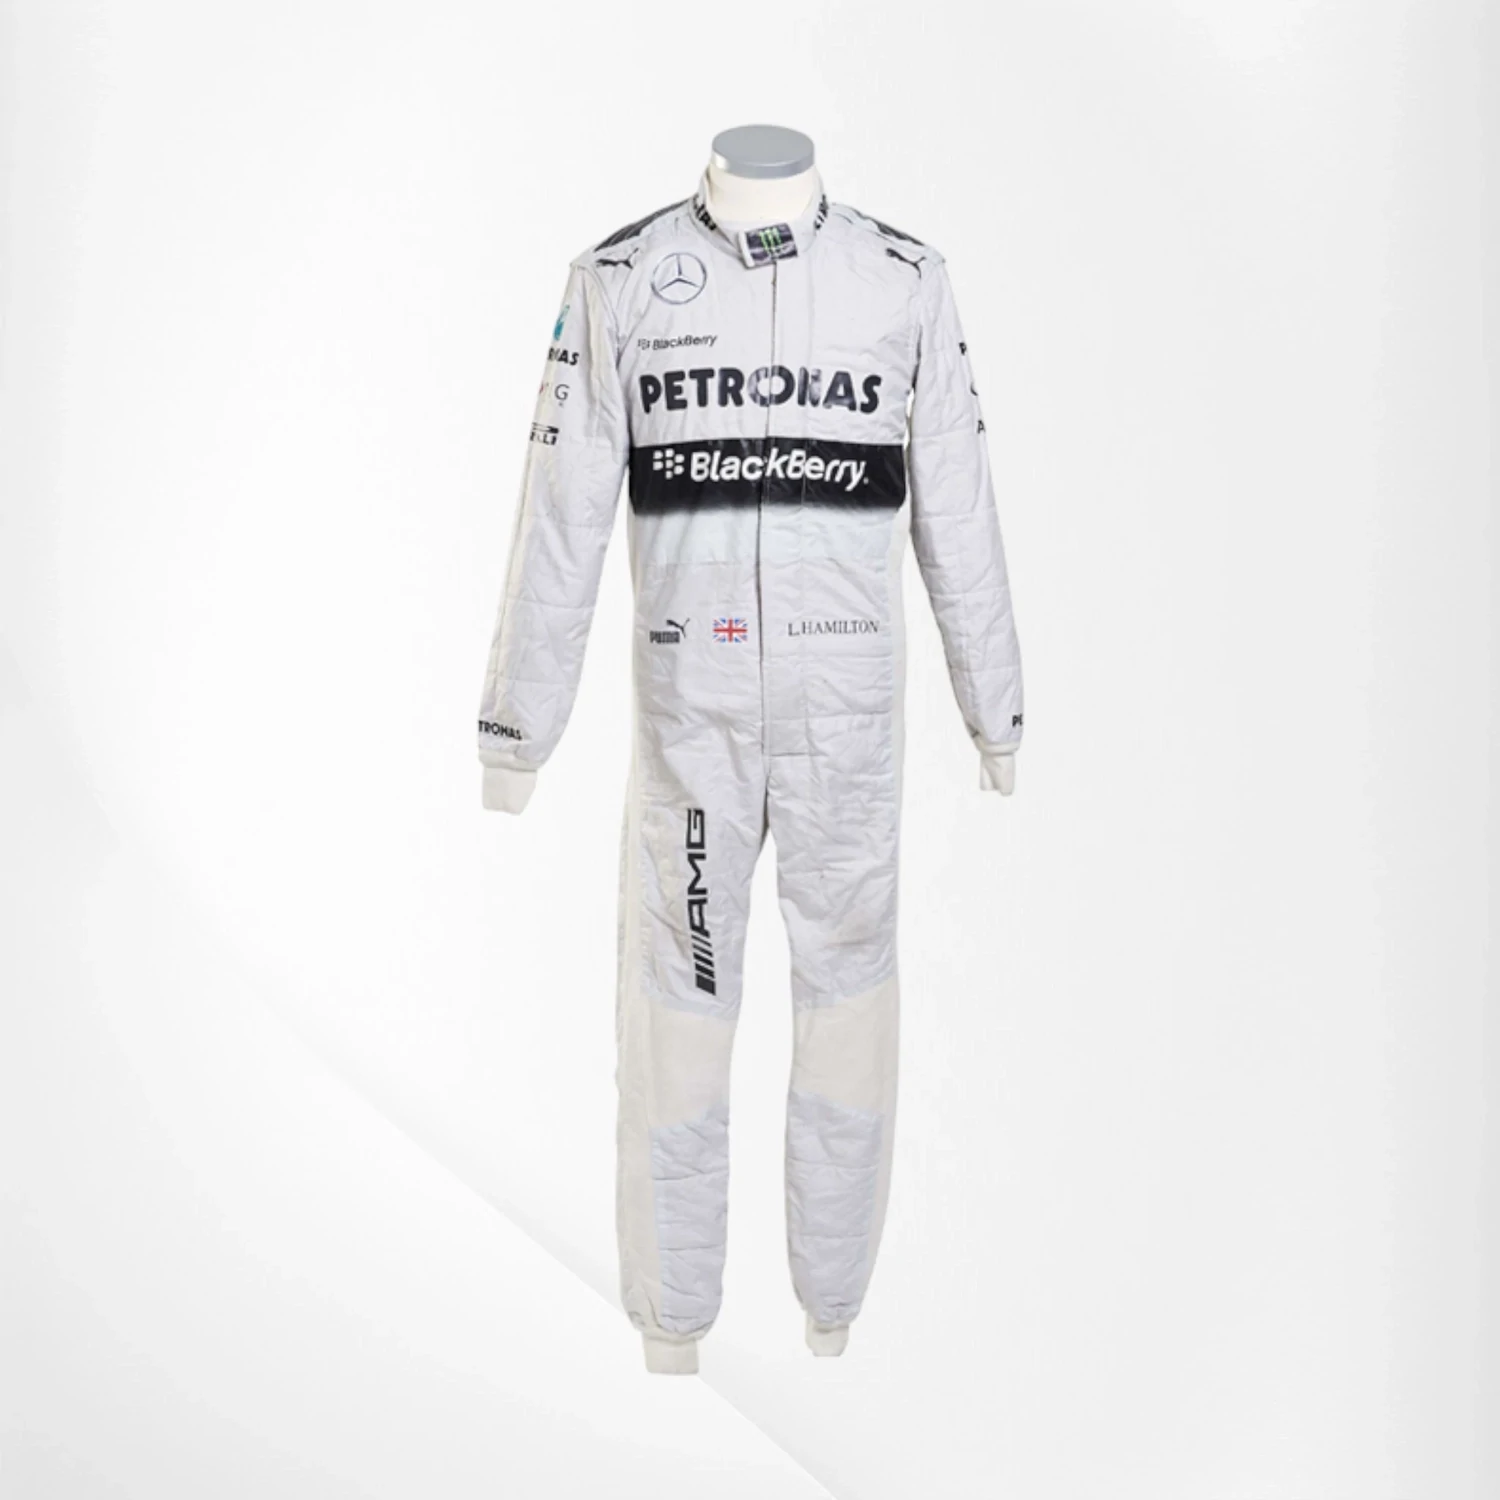 2014 Lewis Hamilton Mercedes PETRONAS F1 Race Suit